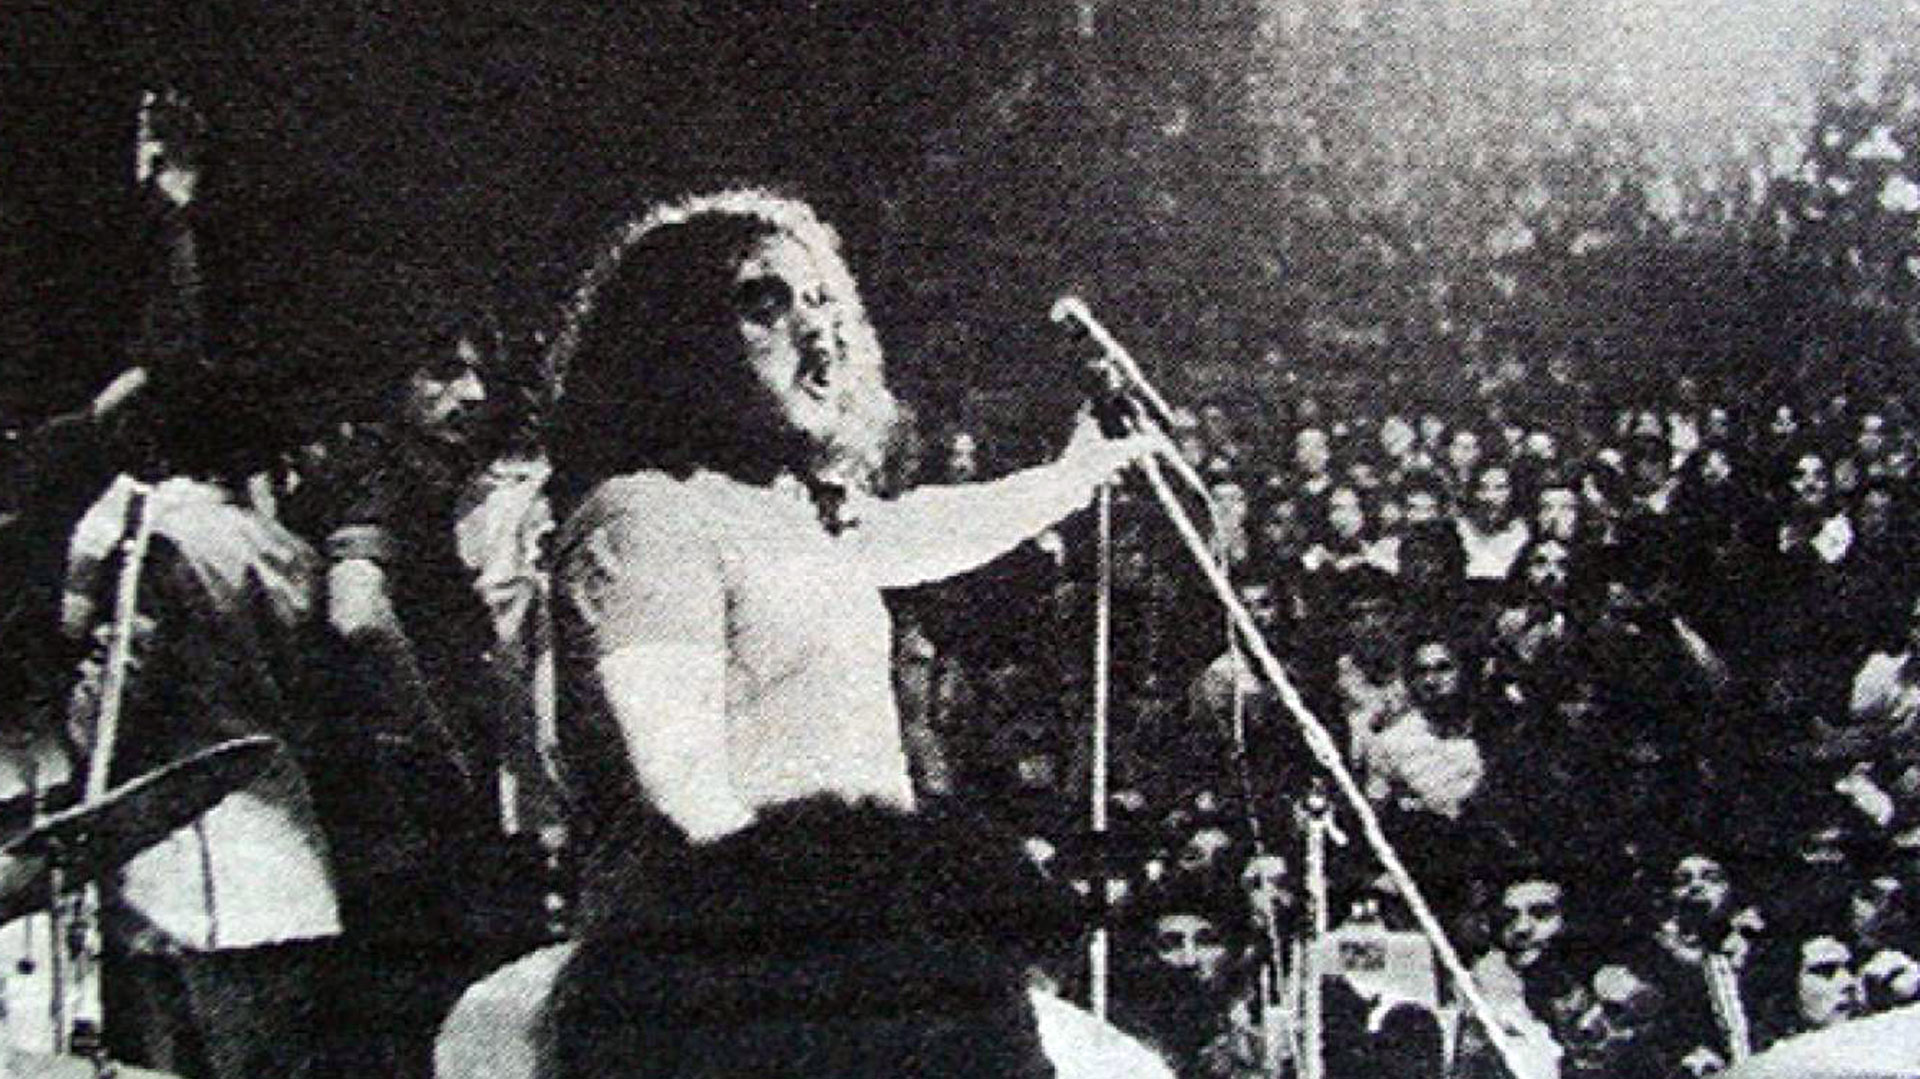 Billy Bond y la Pesada del Rock and Roll sobre el escenario del Luna Park, el 20 de octubre de 1972, fecha grabada para siempre en la memoria rockera argentina por la frase "¡Rompan todo!"